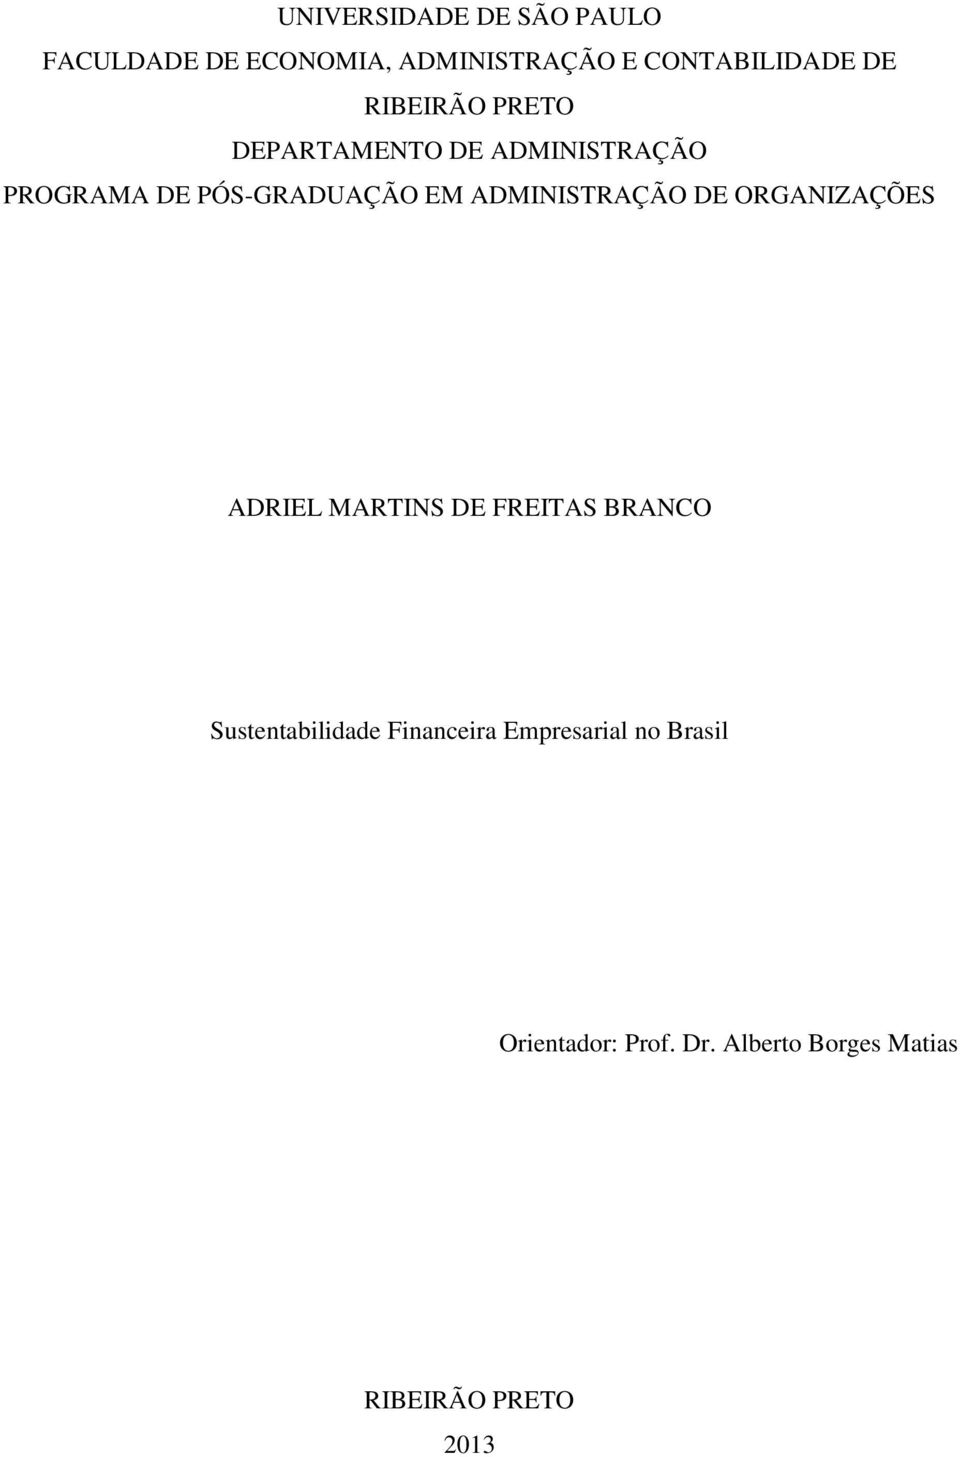 ADMINISTRAÇÃO DE ORGANIZAÇÕES ADRIEL MARTINS DE FREITAS BRANCO Sustentabilidade